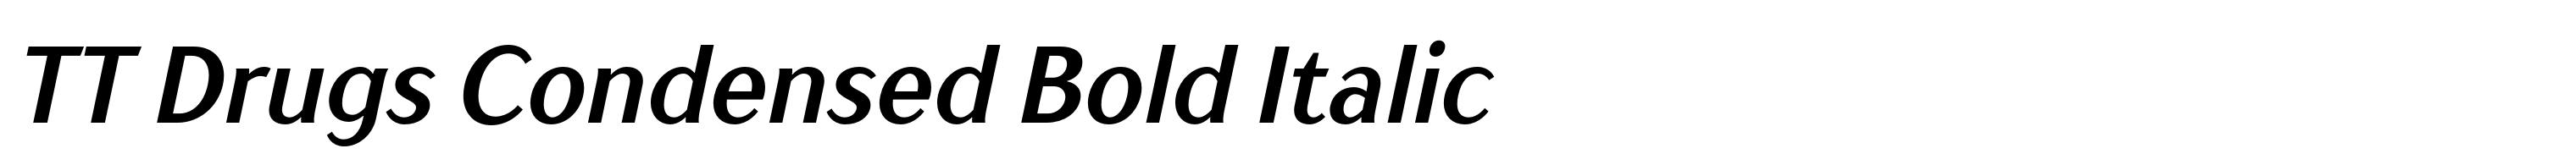 TT Drugs Condensed Bold Italic